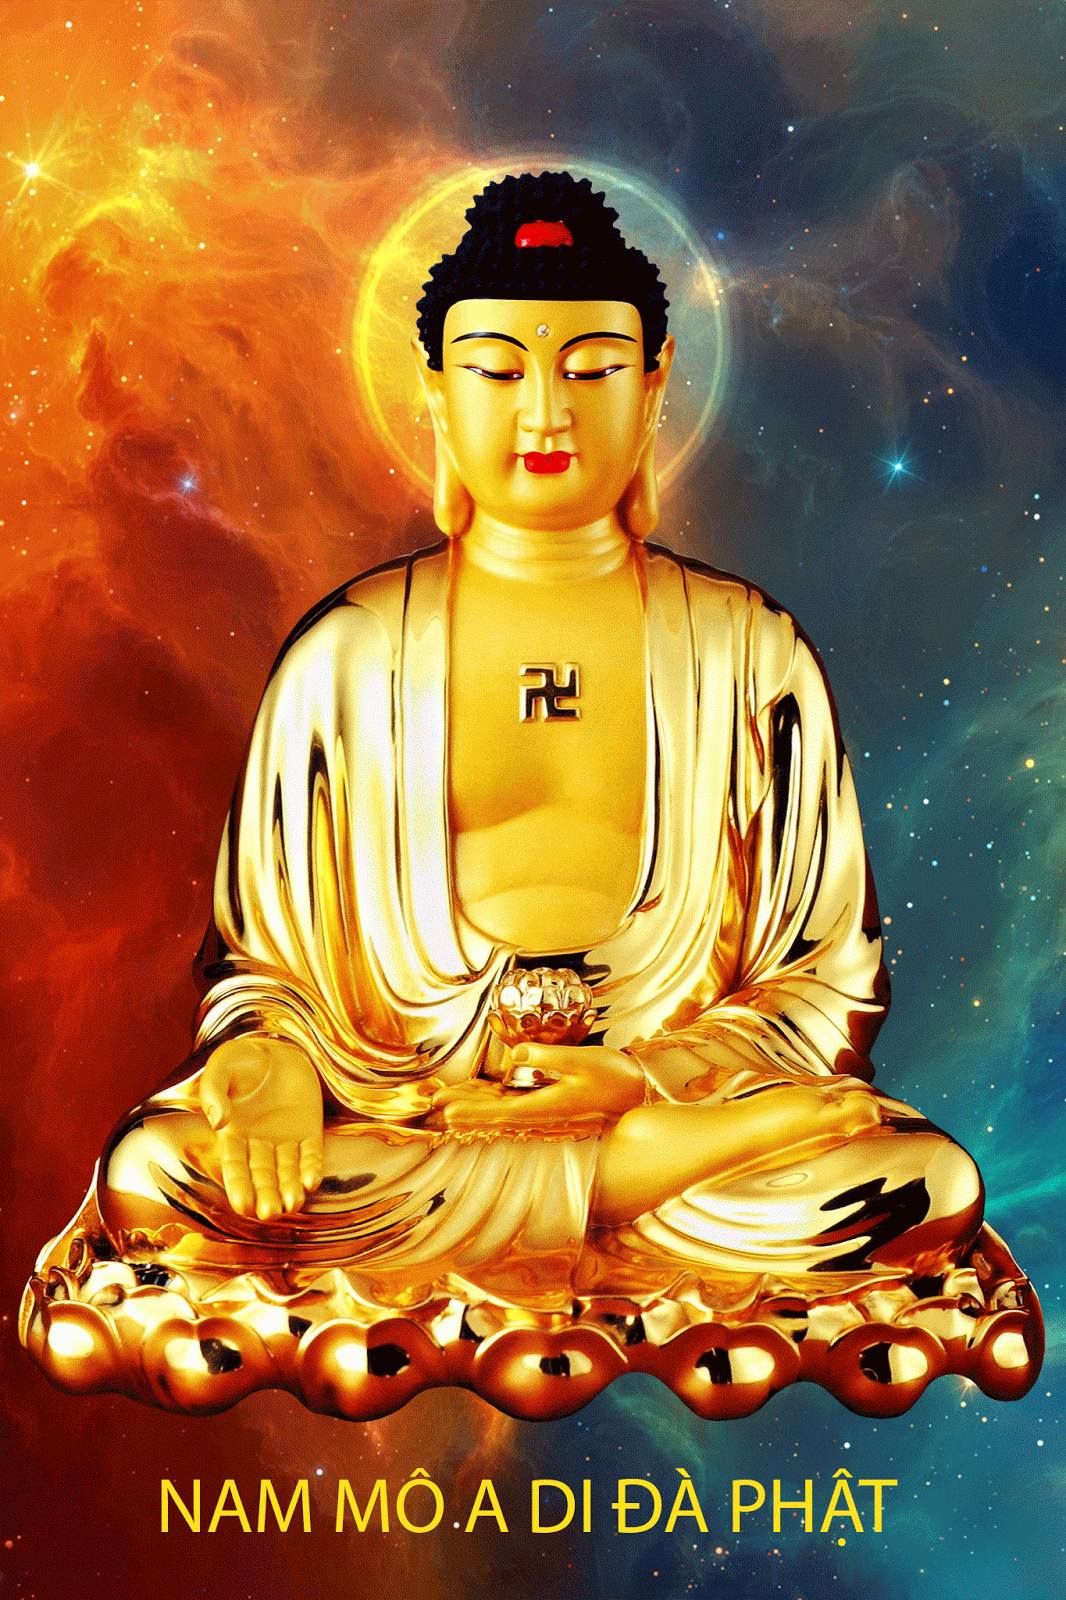 Hình Phật A Di Đà động - Hình ảnh Phật rất đẹp quality cao